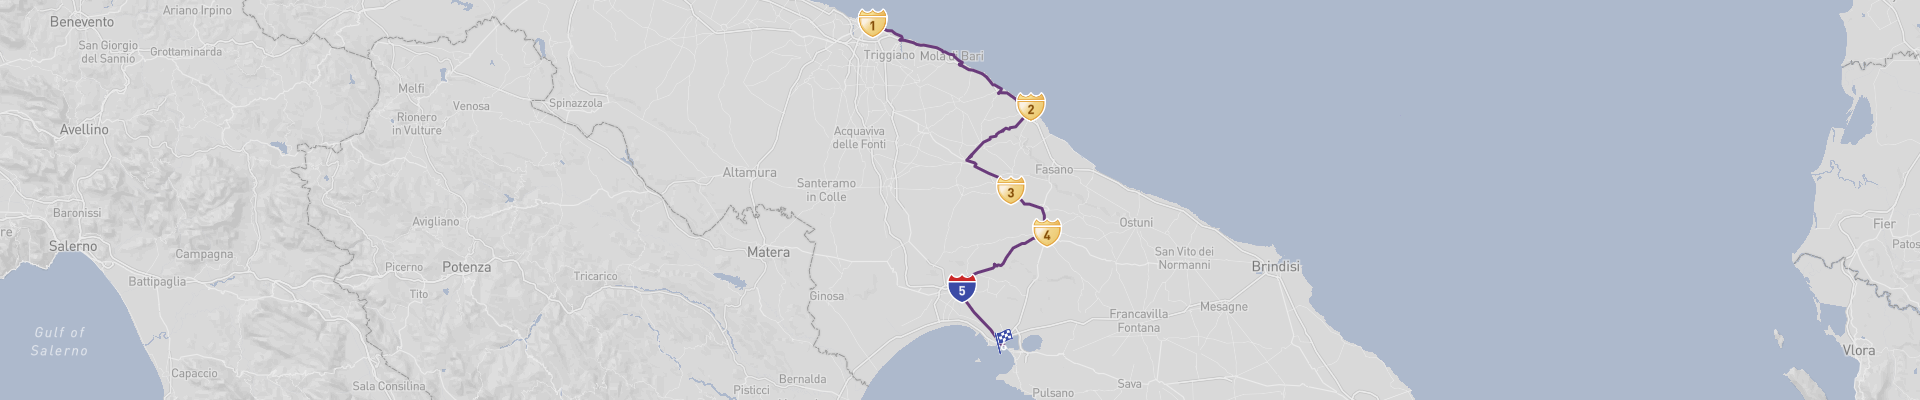 Bari to Taranto Scenic Drive